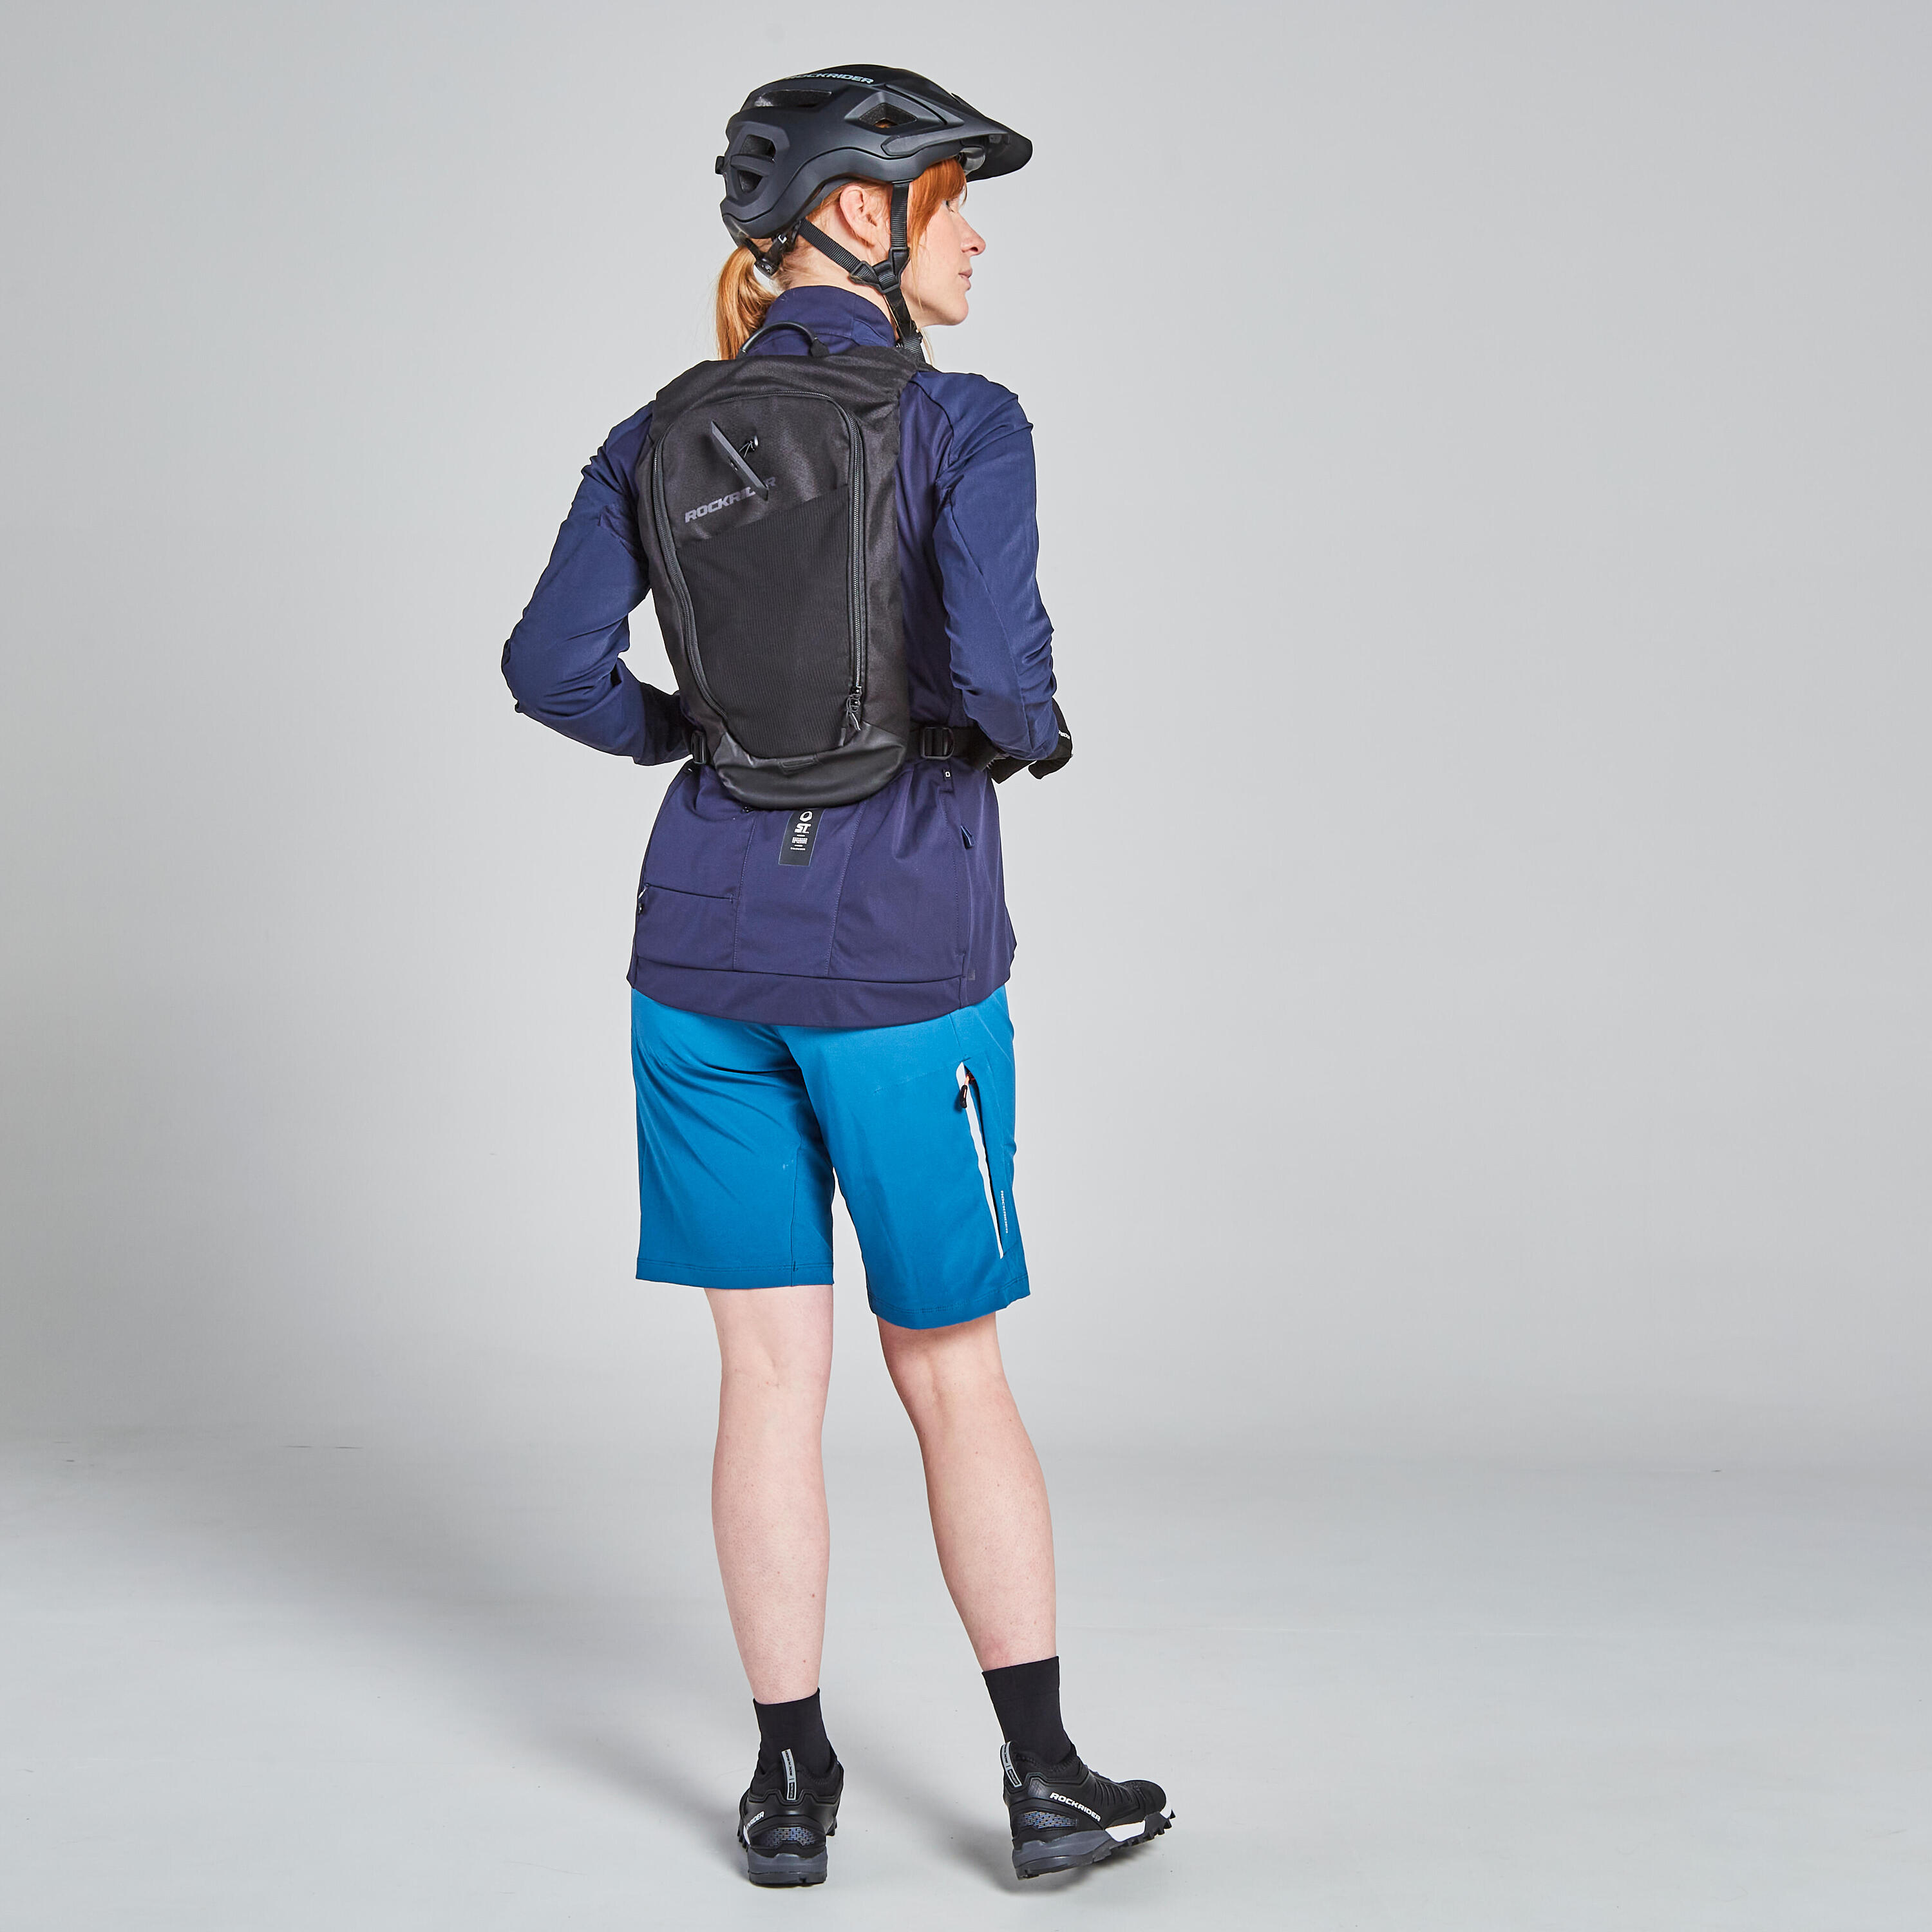 Women's Mountain Bike Shorts EXP 700 - Turquoise 4/11